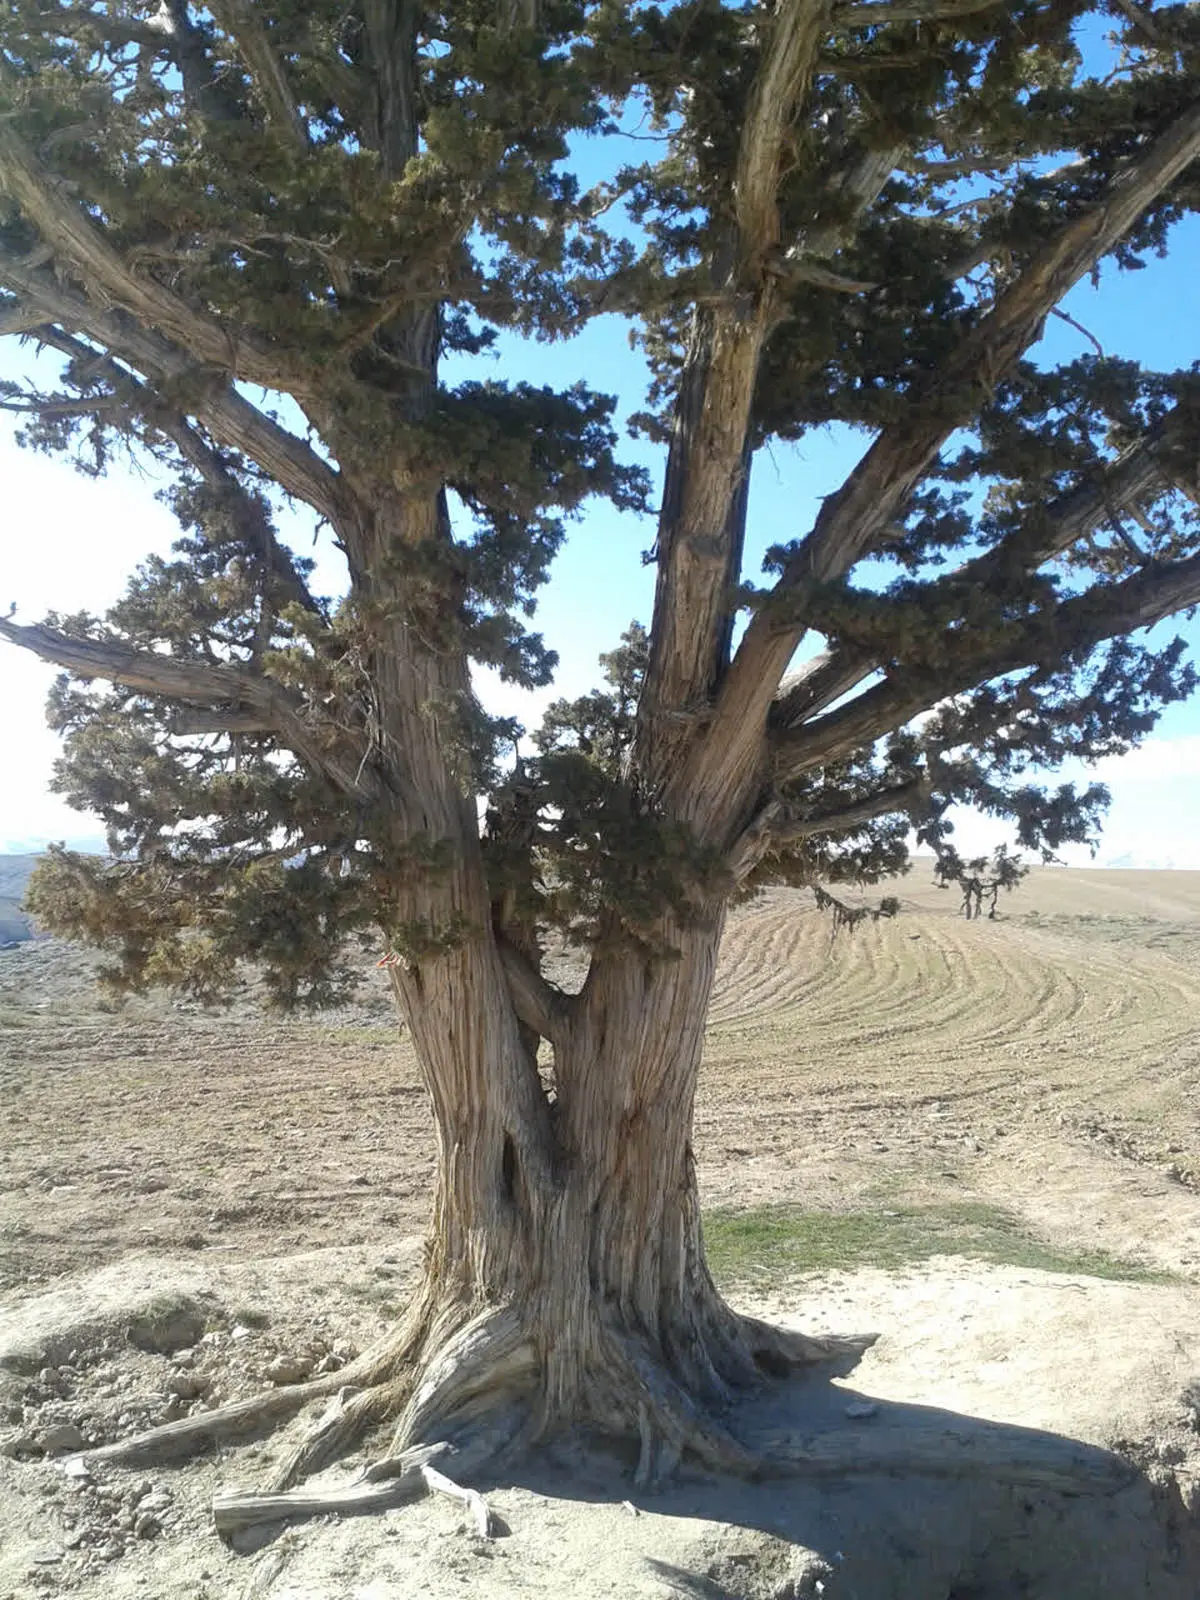  درخت کهنسال به ثبت ملی رسید